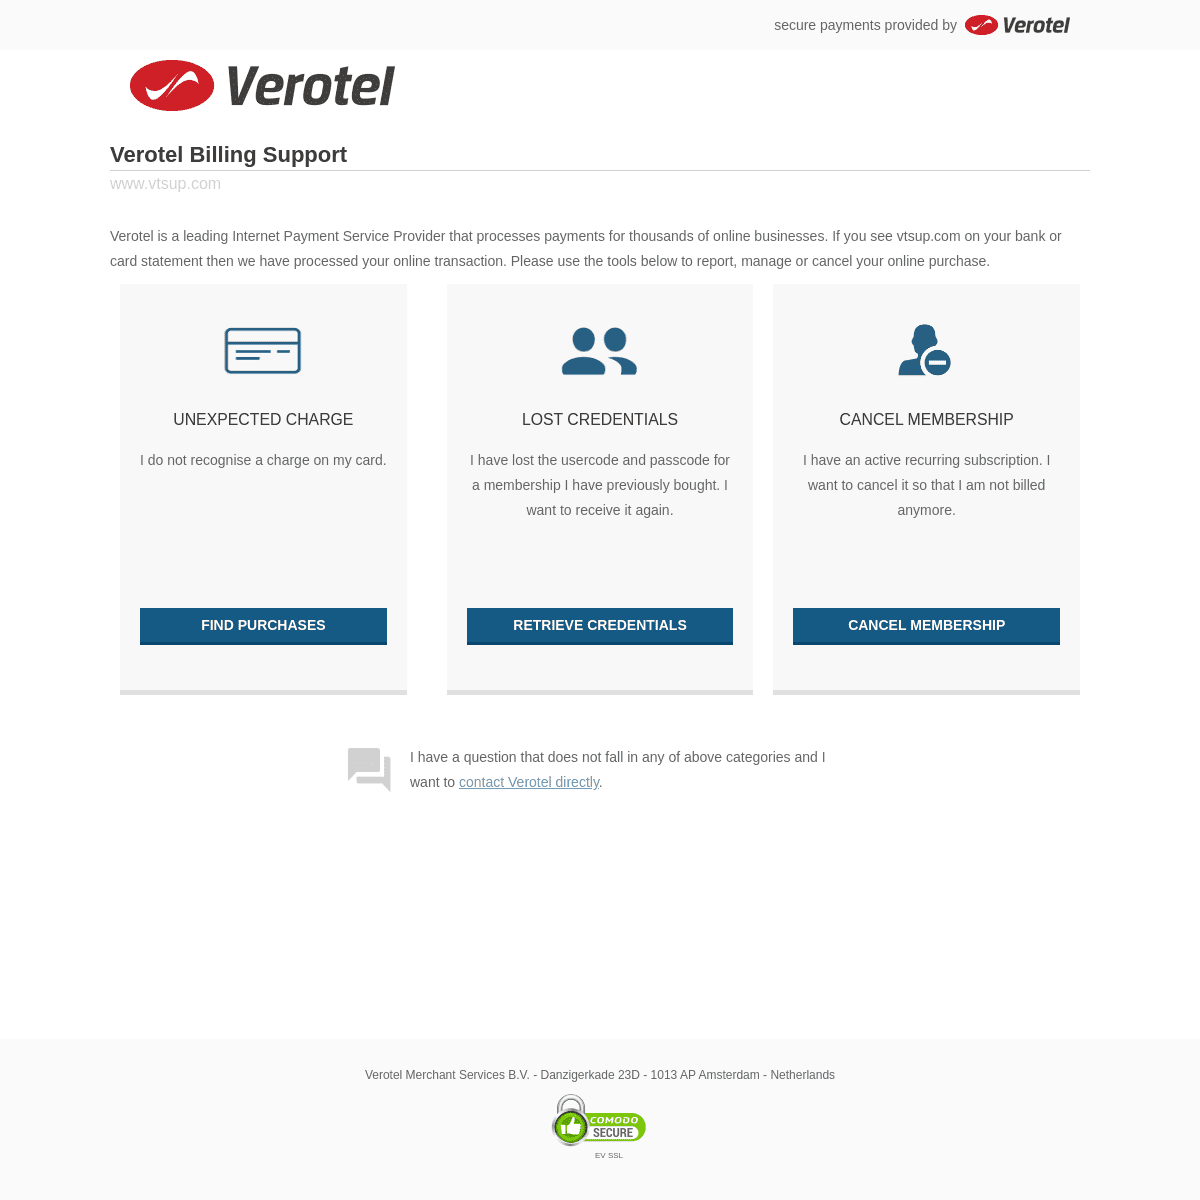 A complete backup of vtsup.com